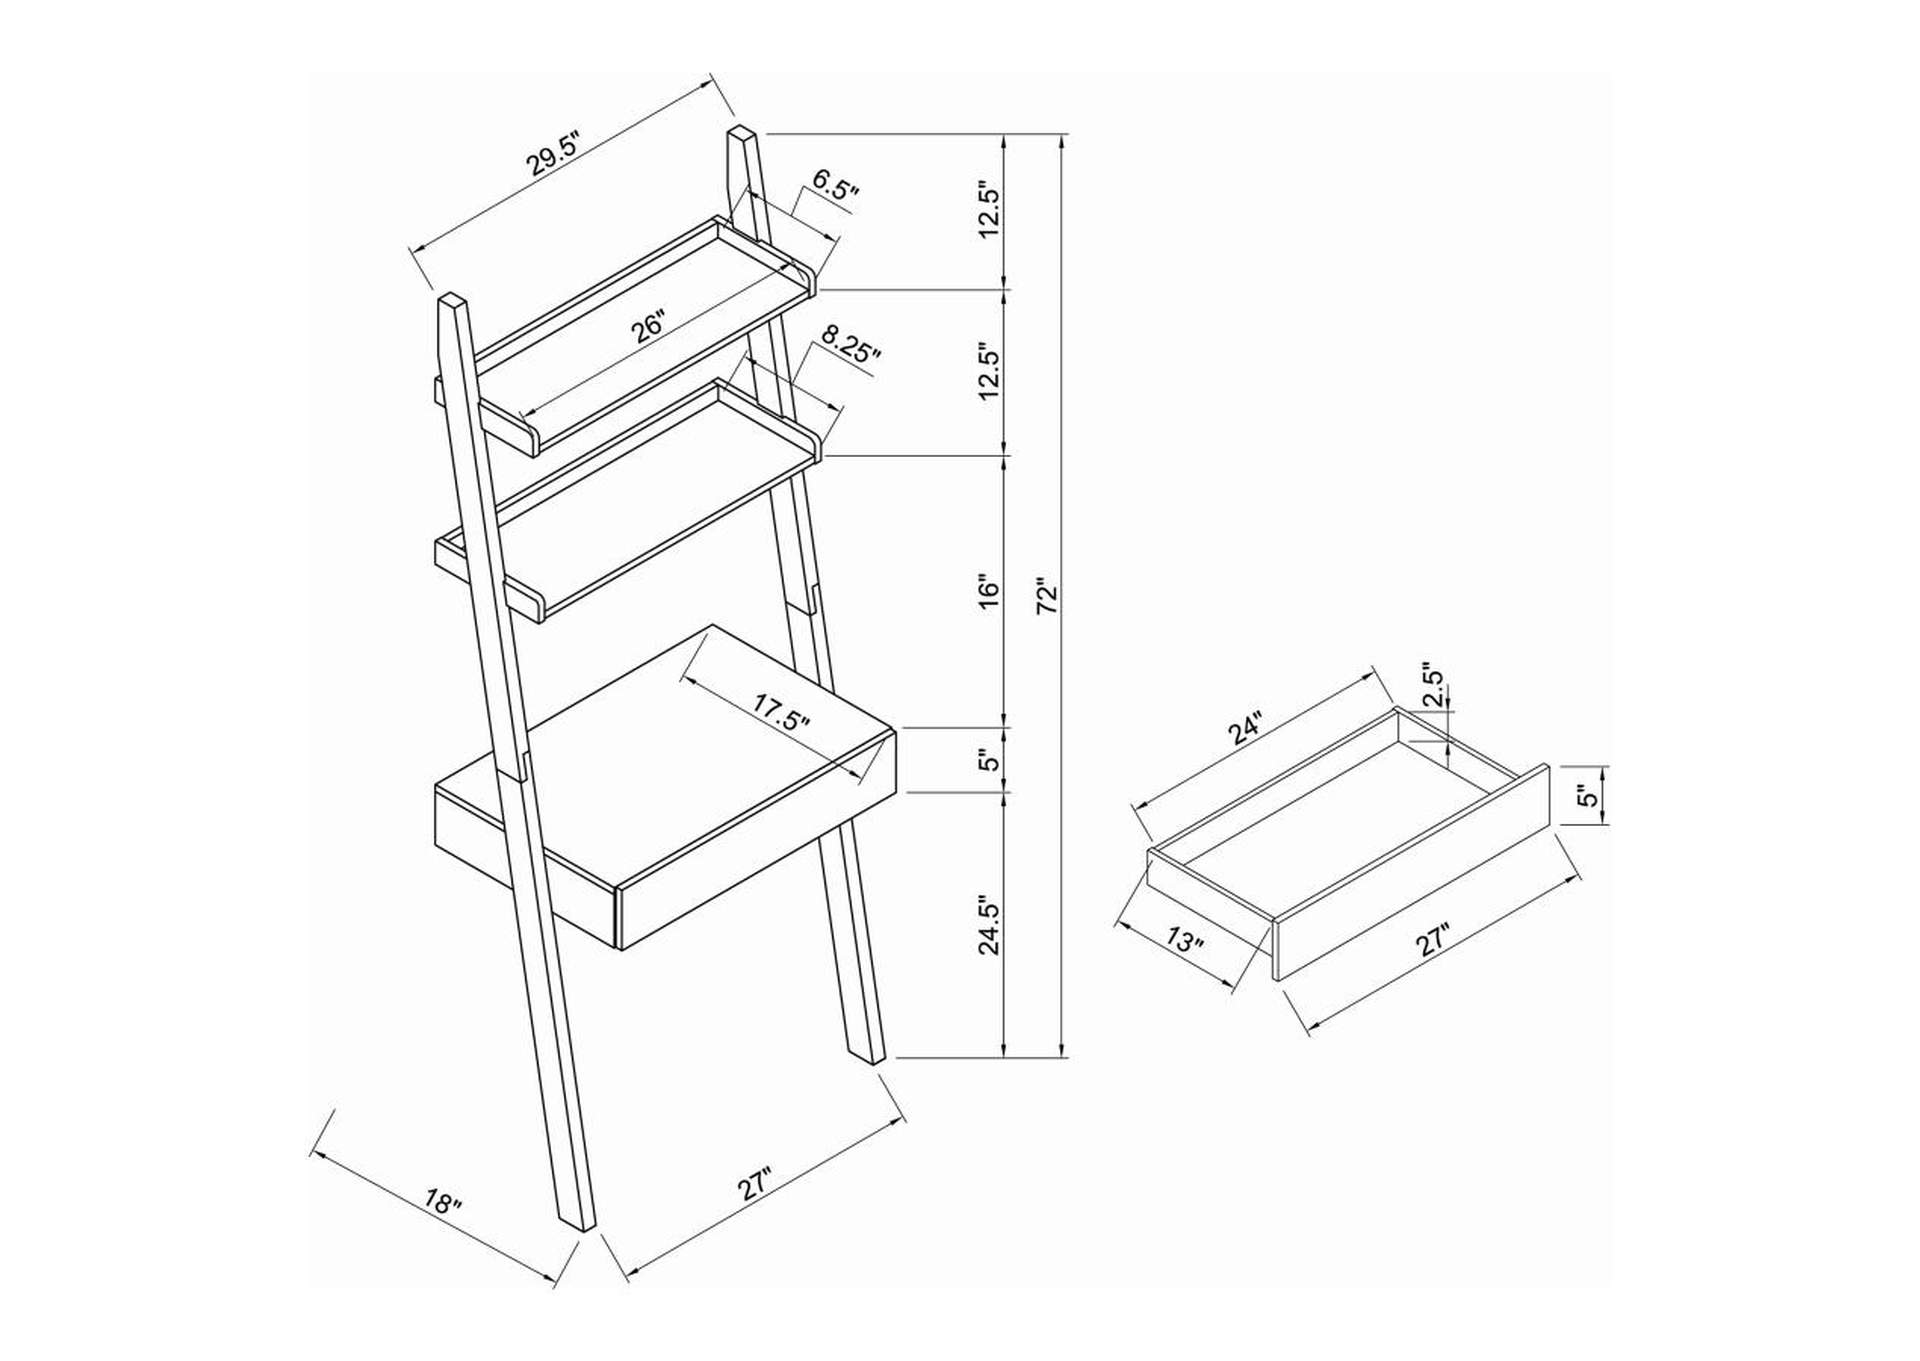 Colella 2-Shelf Writing Ladder Desk Cappuccino,Coaster Furniture